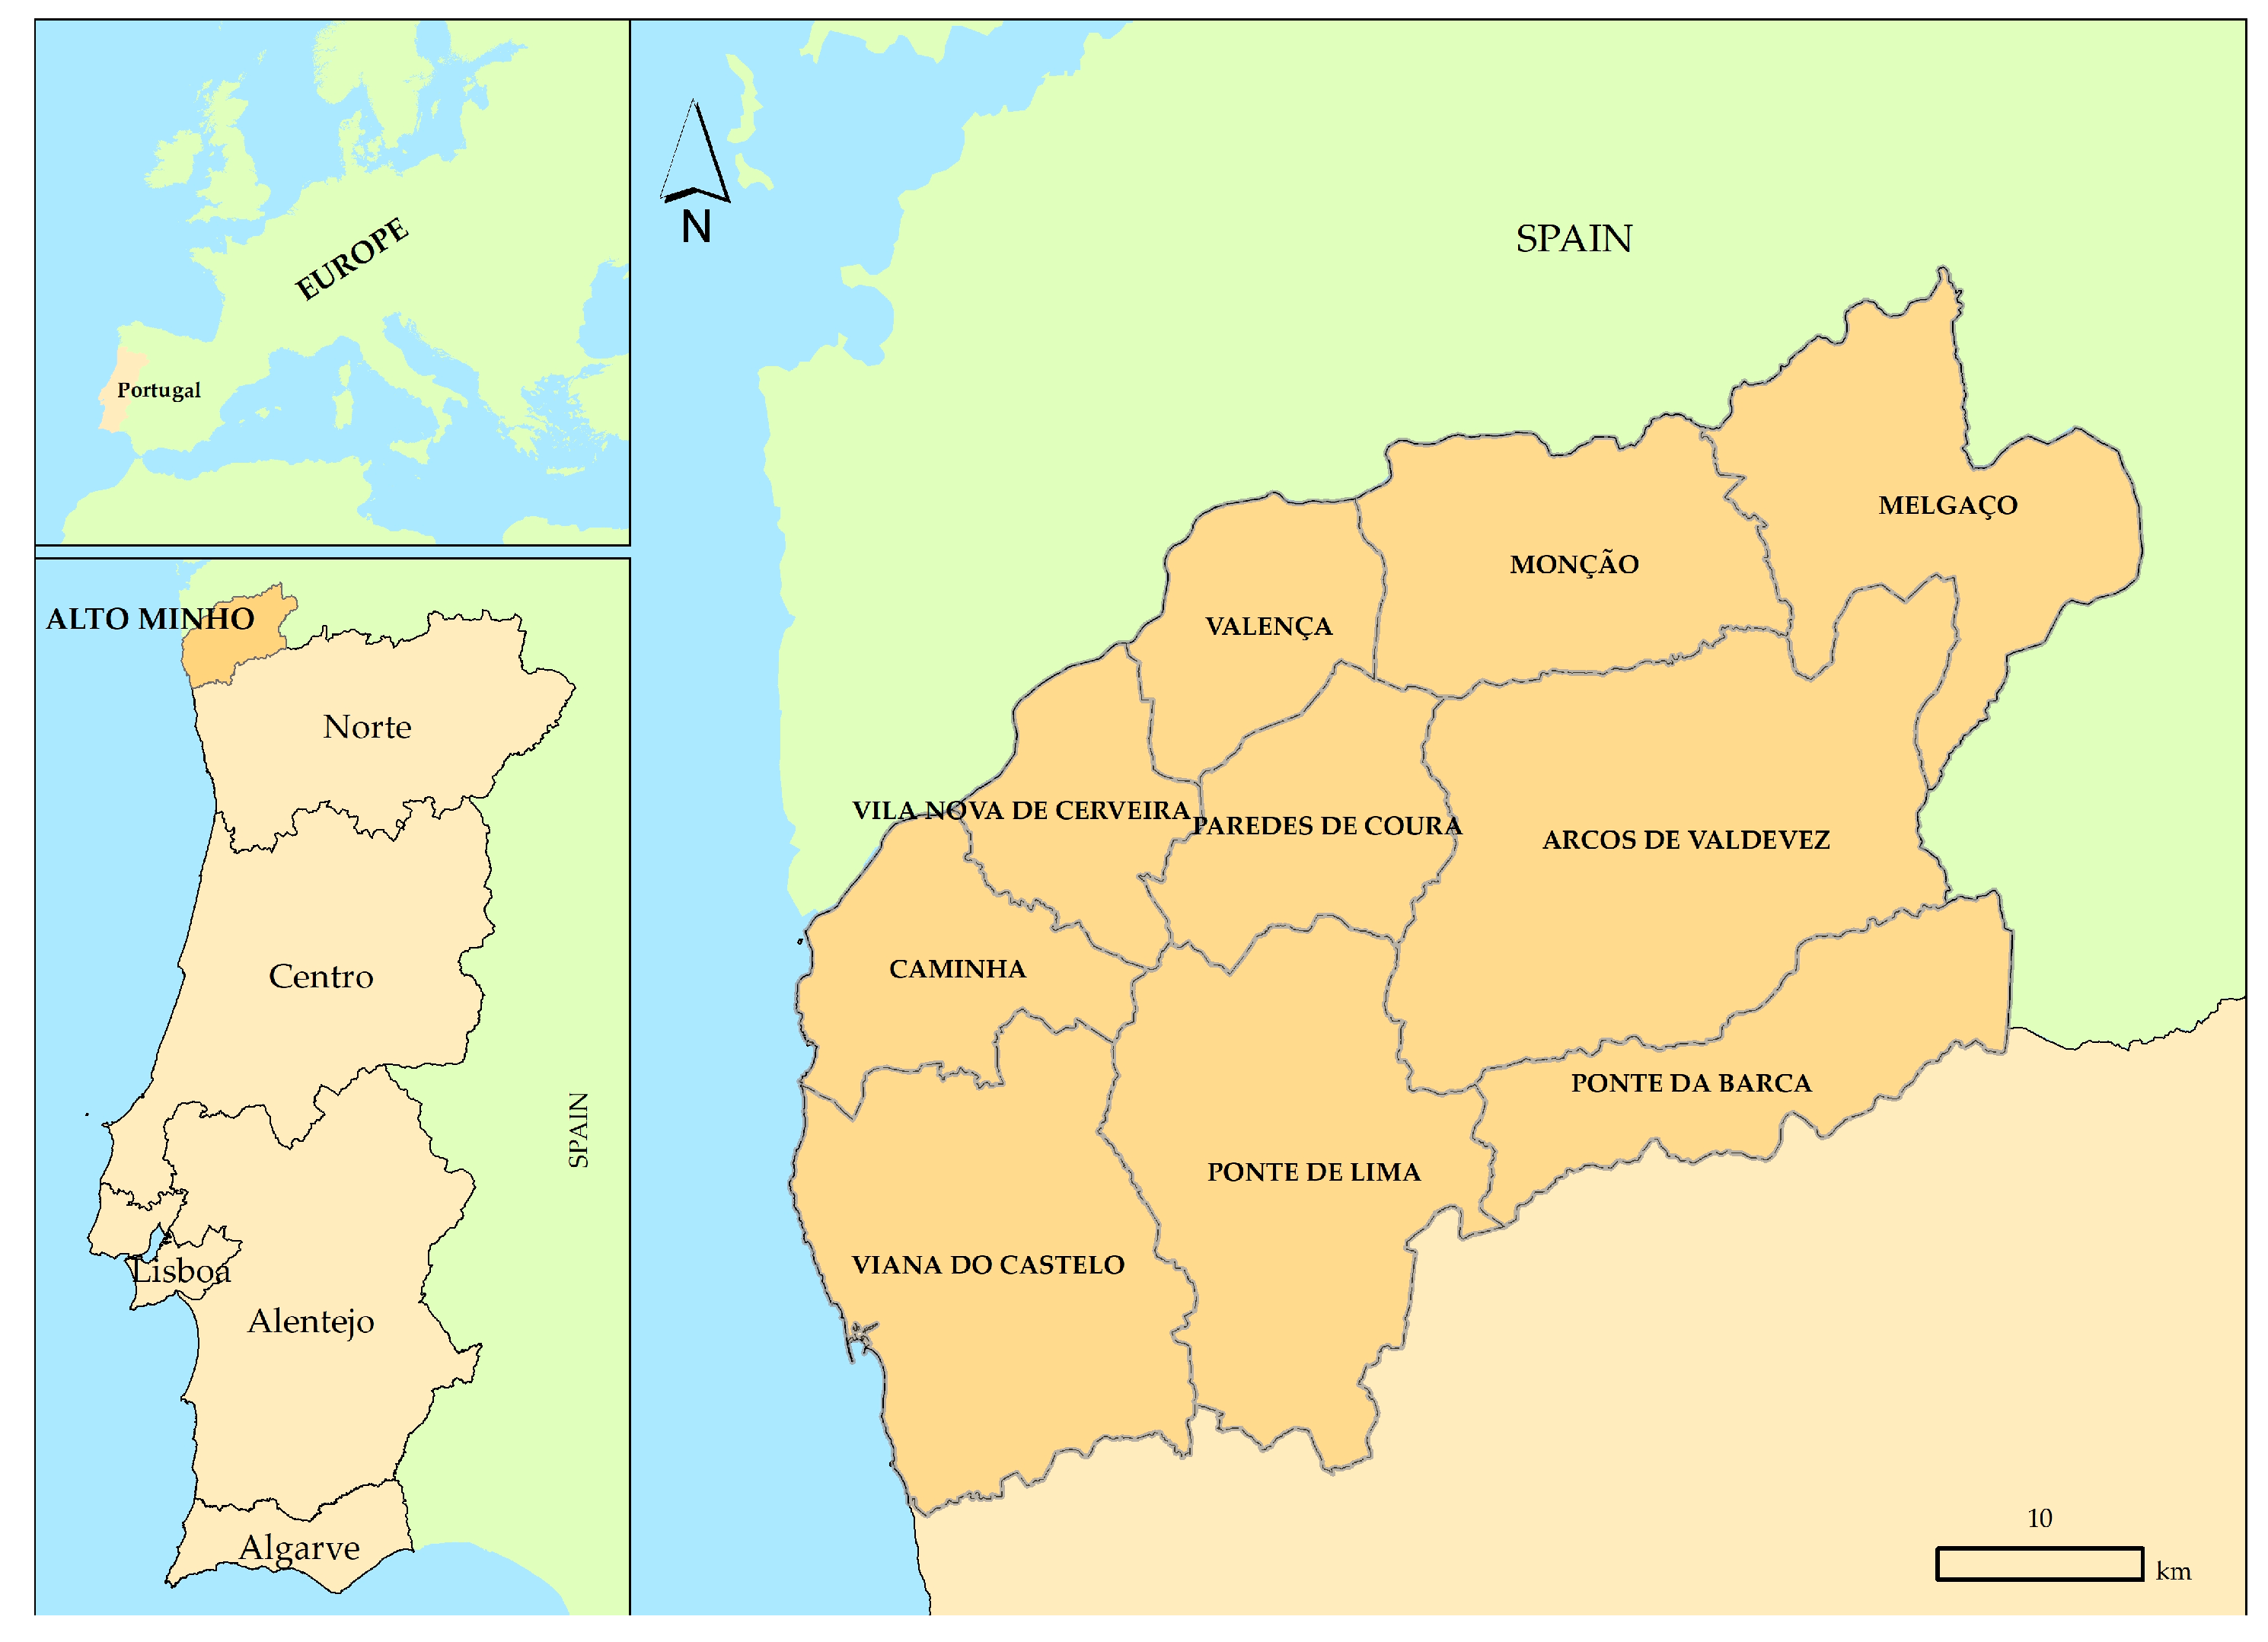 1: Mapa de Portugal continental com a identificação dos distritos